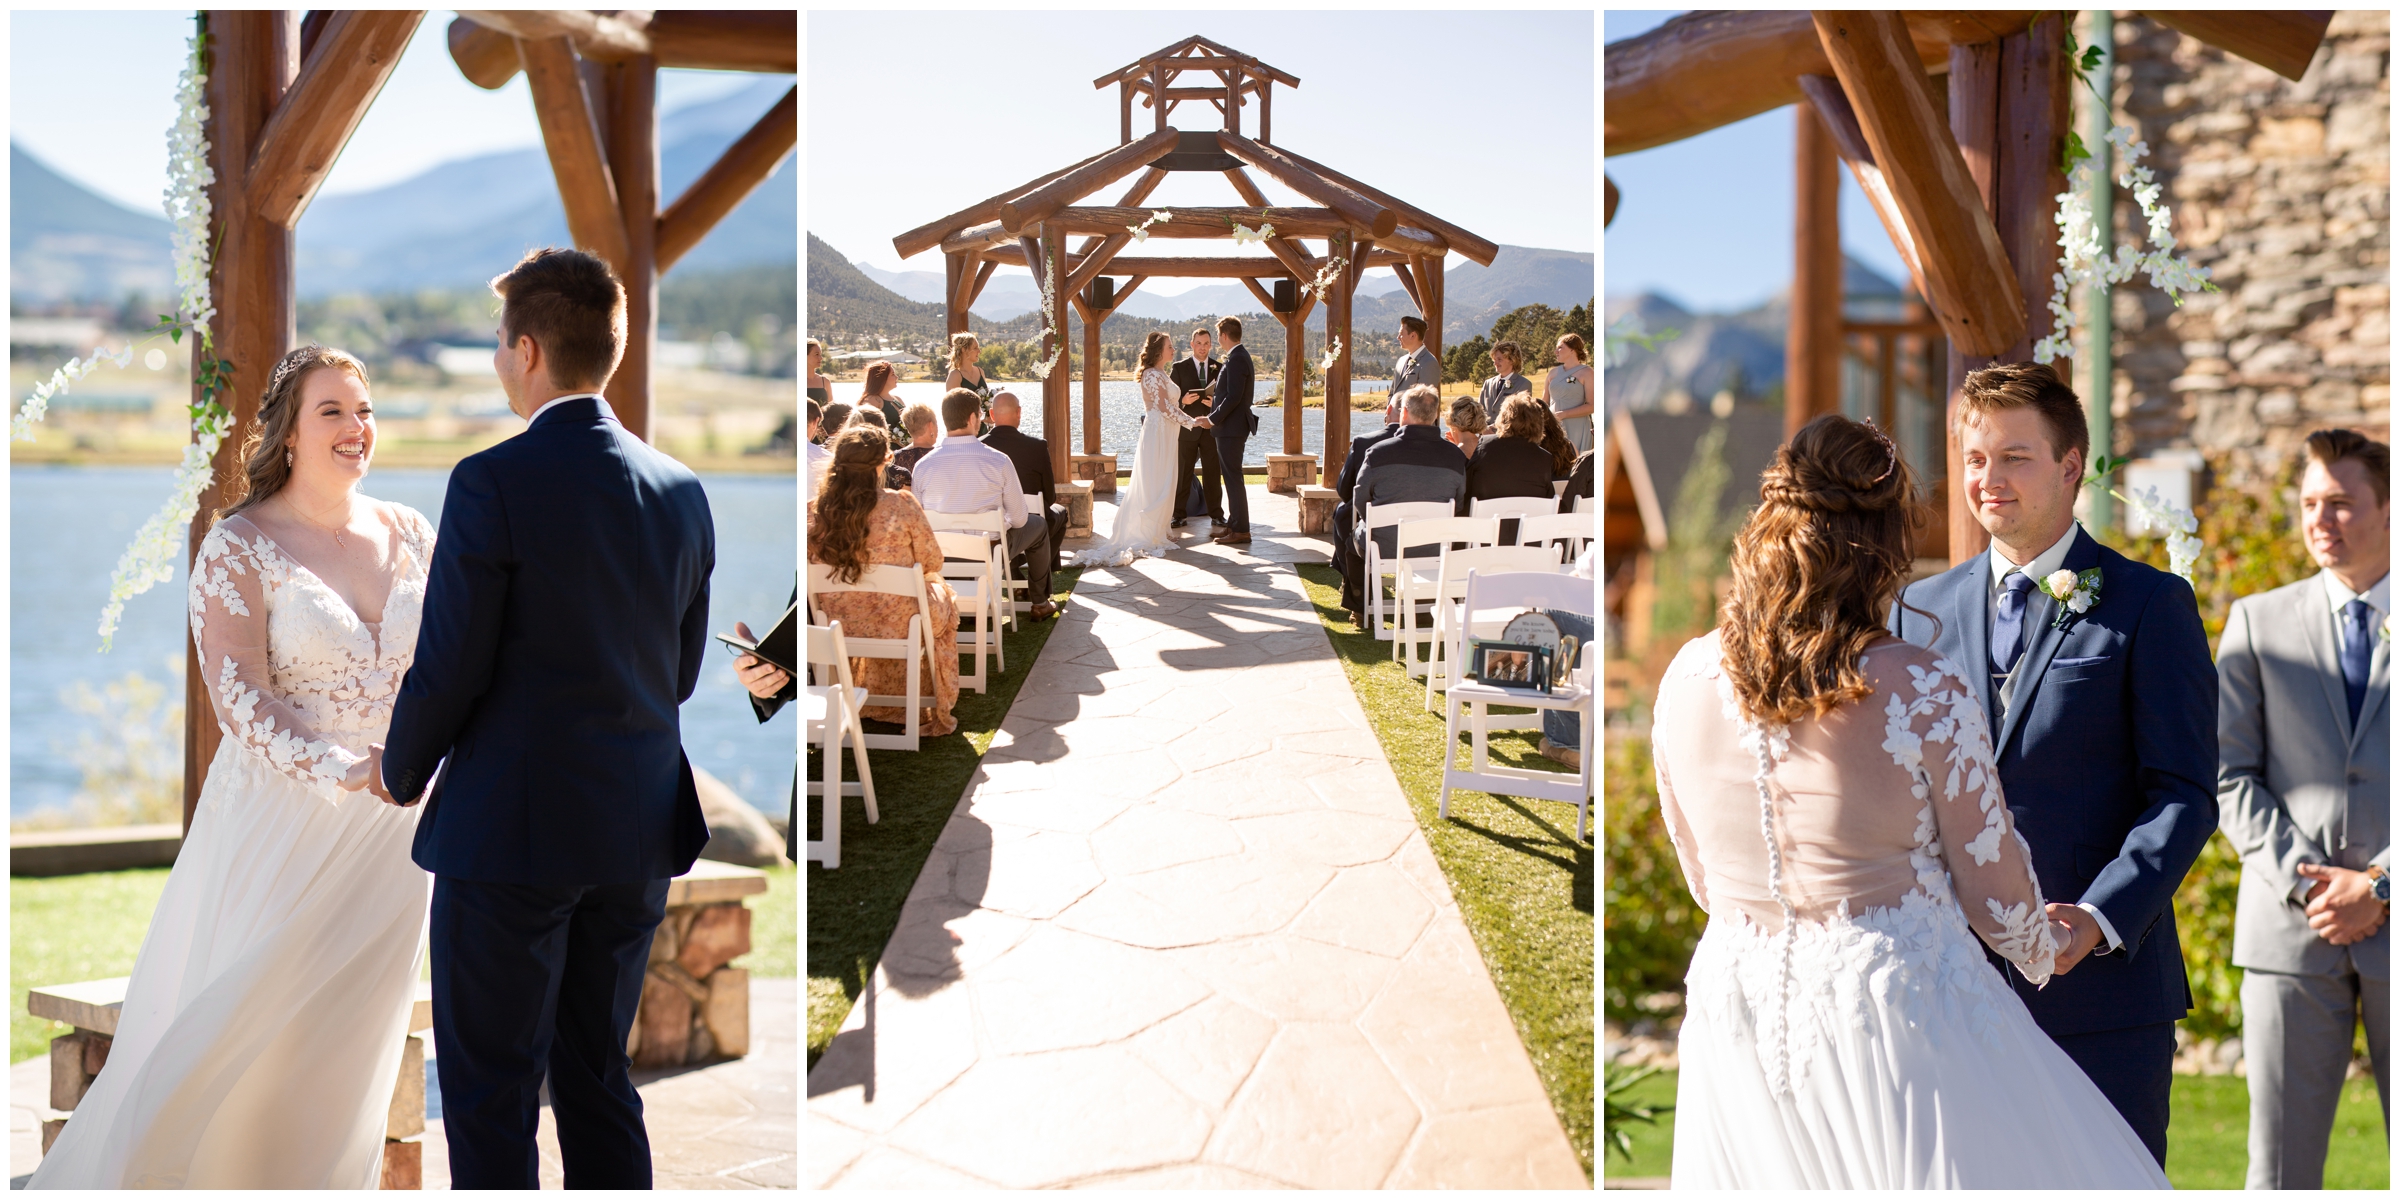 couple saying vows under arbor at Lake Estes Colorado wedding ceremony 